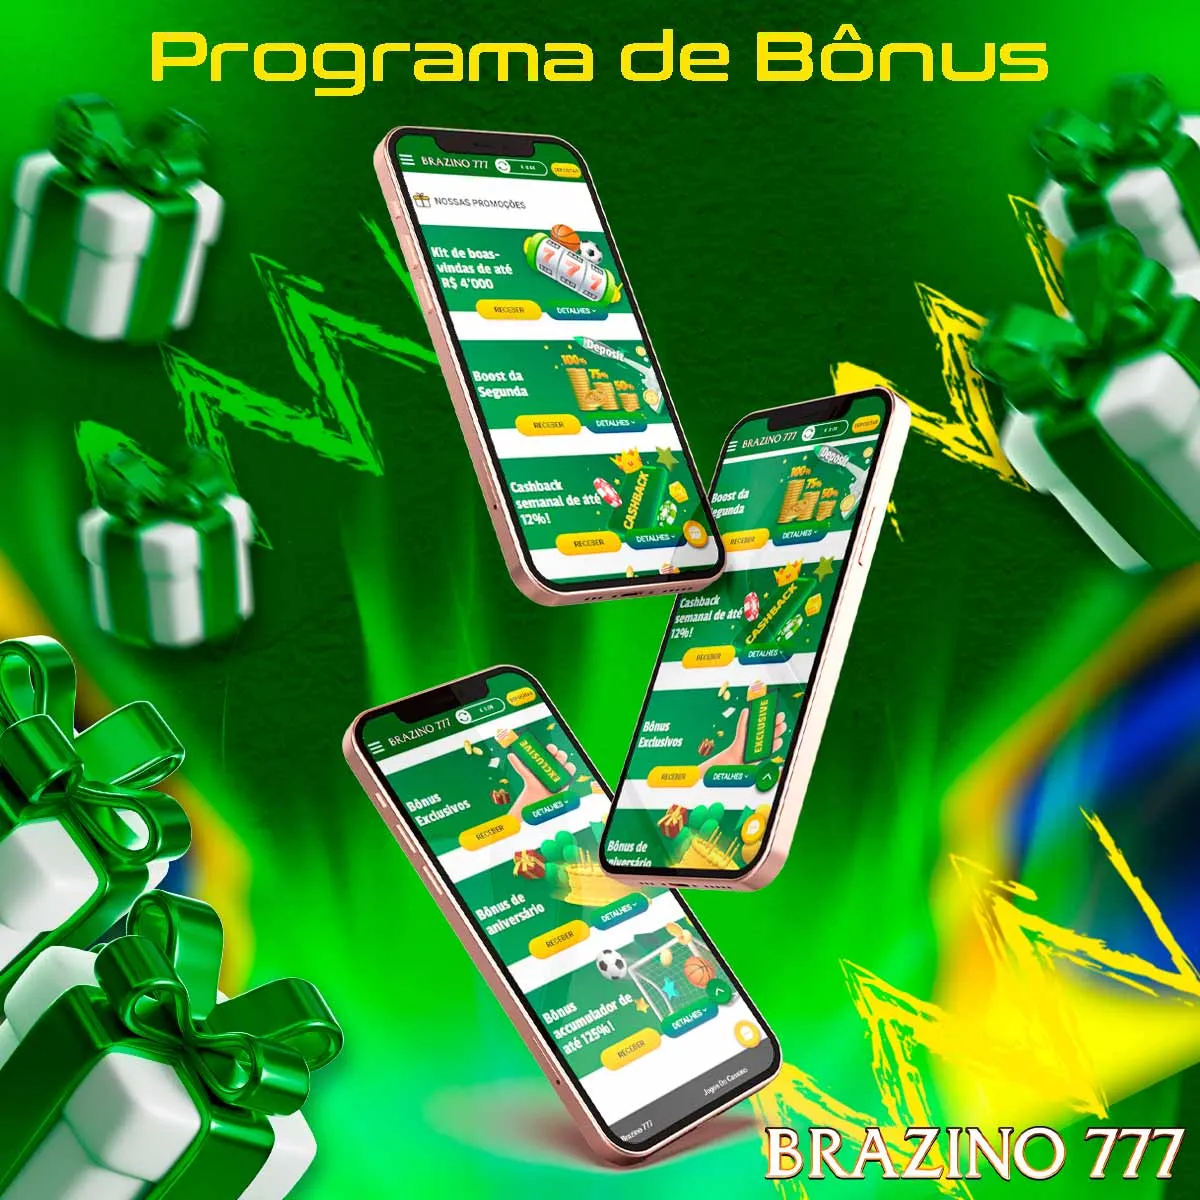 Visão geral do programa de bônus da casa de apostas Brazino777 no Brasil